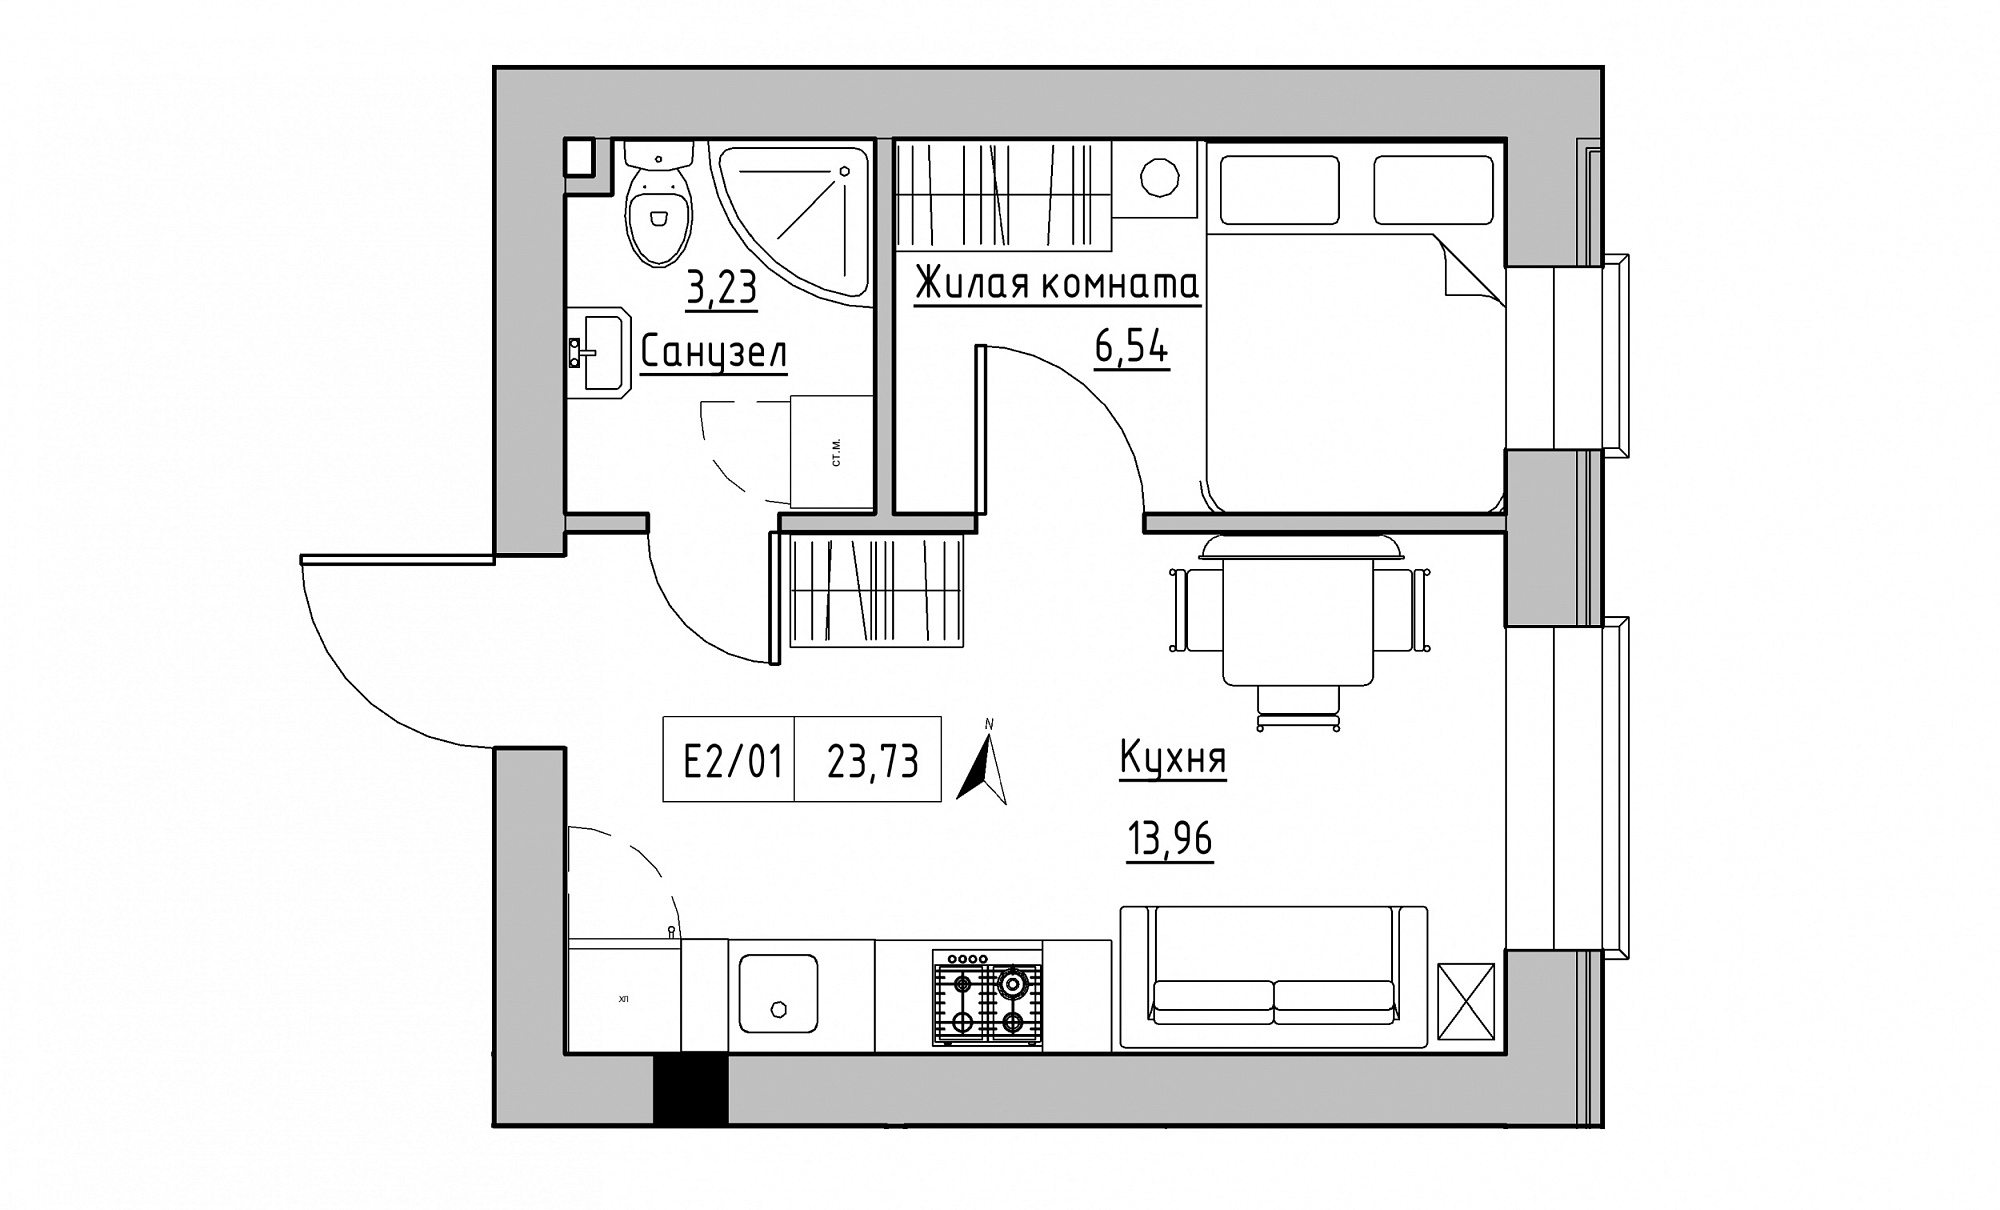 Планировка 1-к квартира площей 23.73м2, KS-015-01/0007.